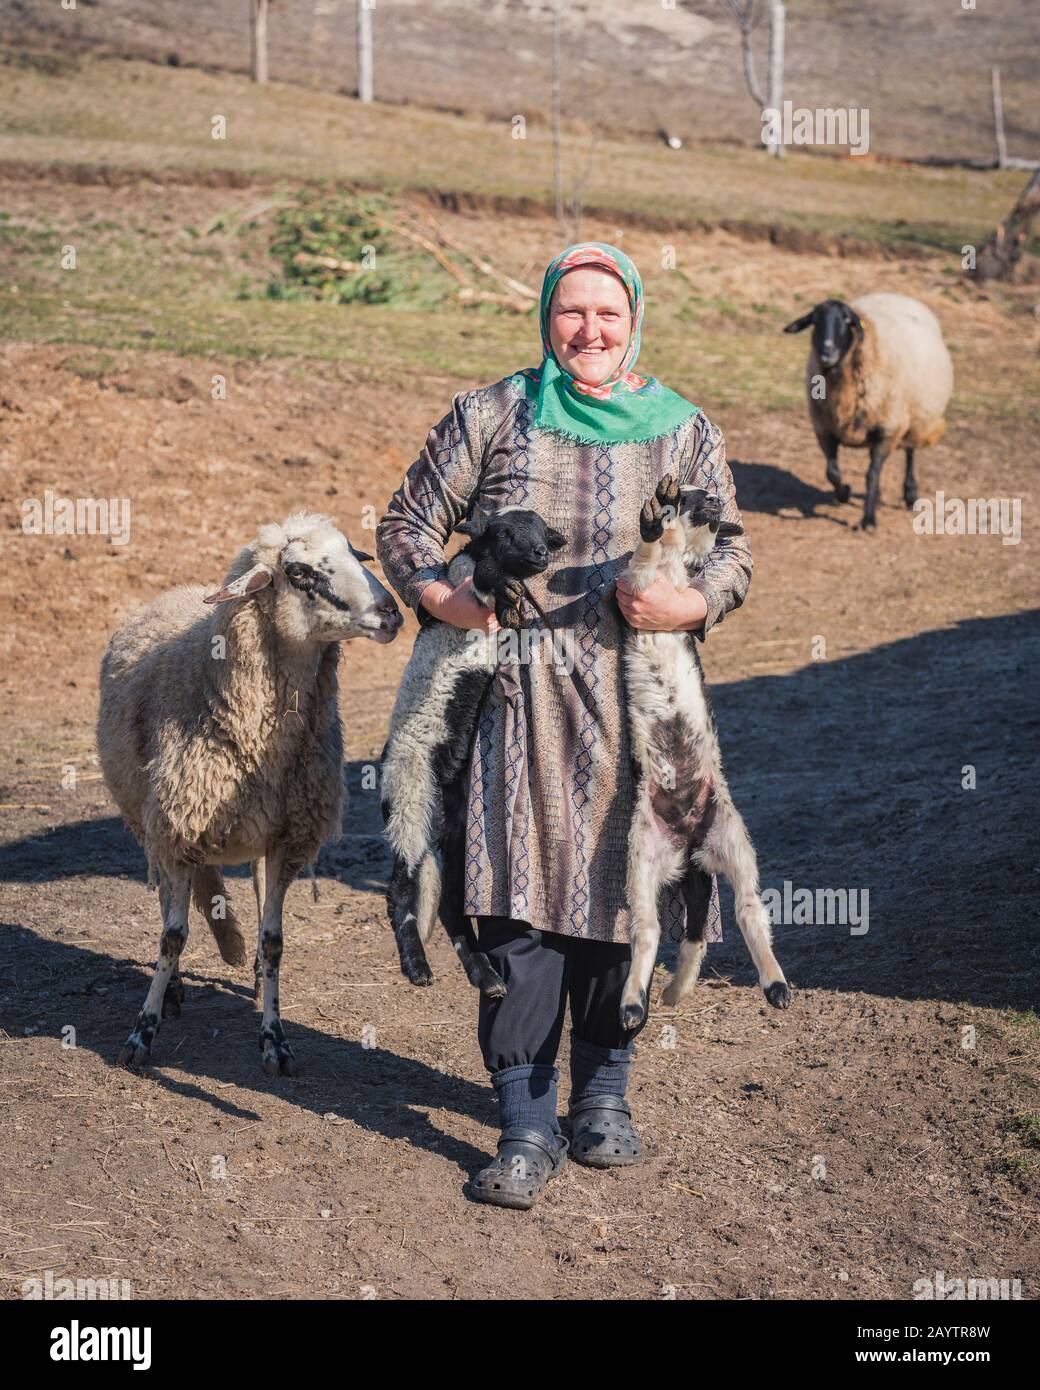 Krastava village, Rhodope montagnes / Bulgarie - Février 16 2020: Portrait de la vieille femme hug agneau dans la ferme. Banque D'Images